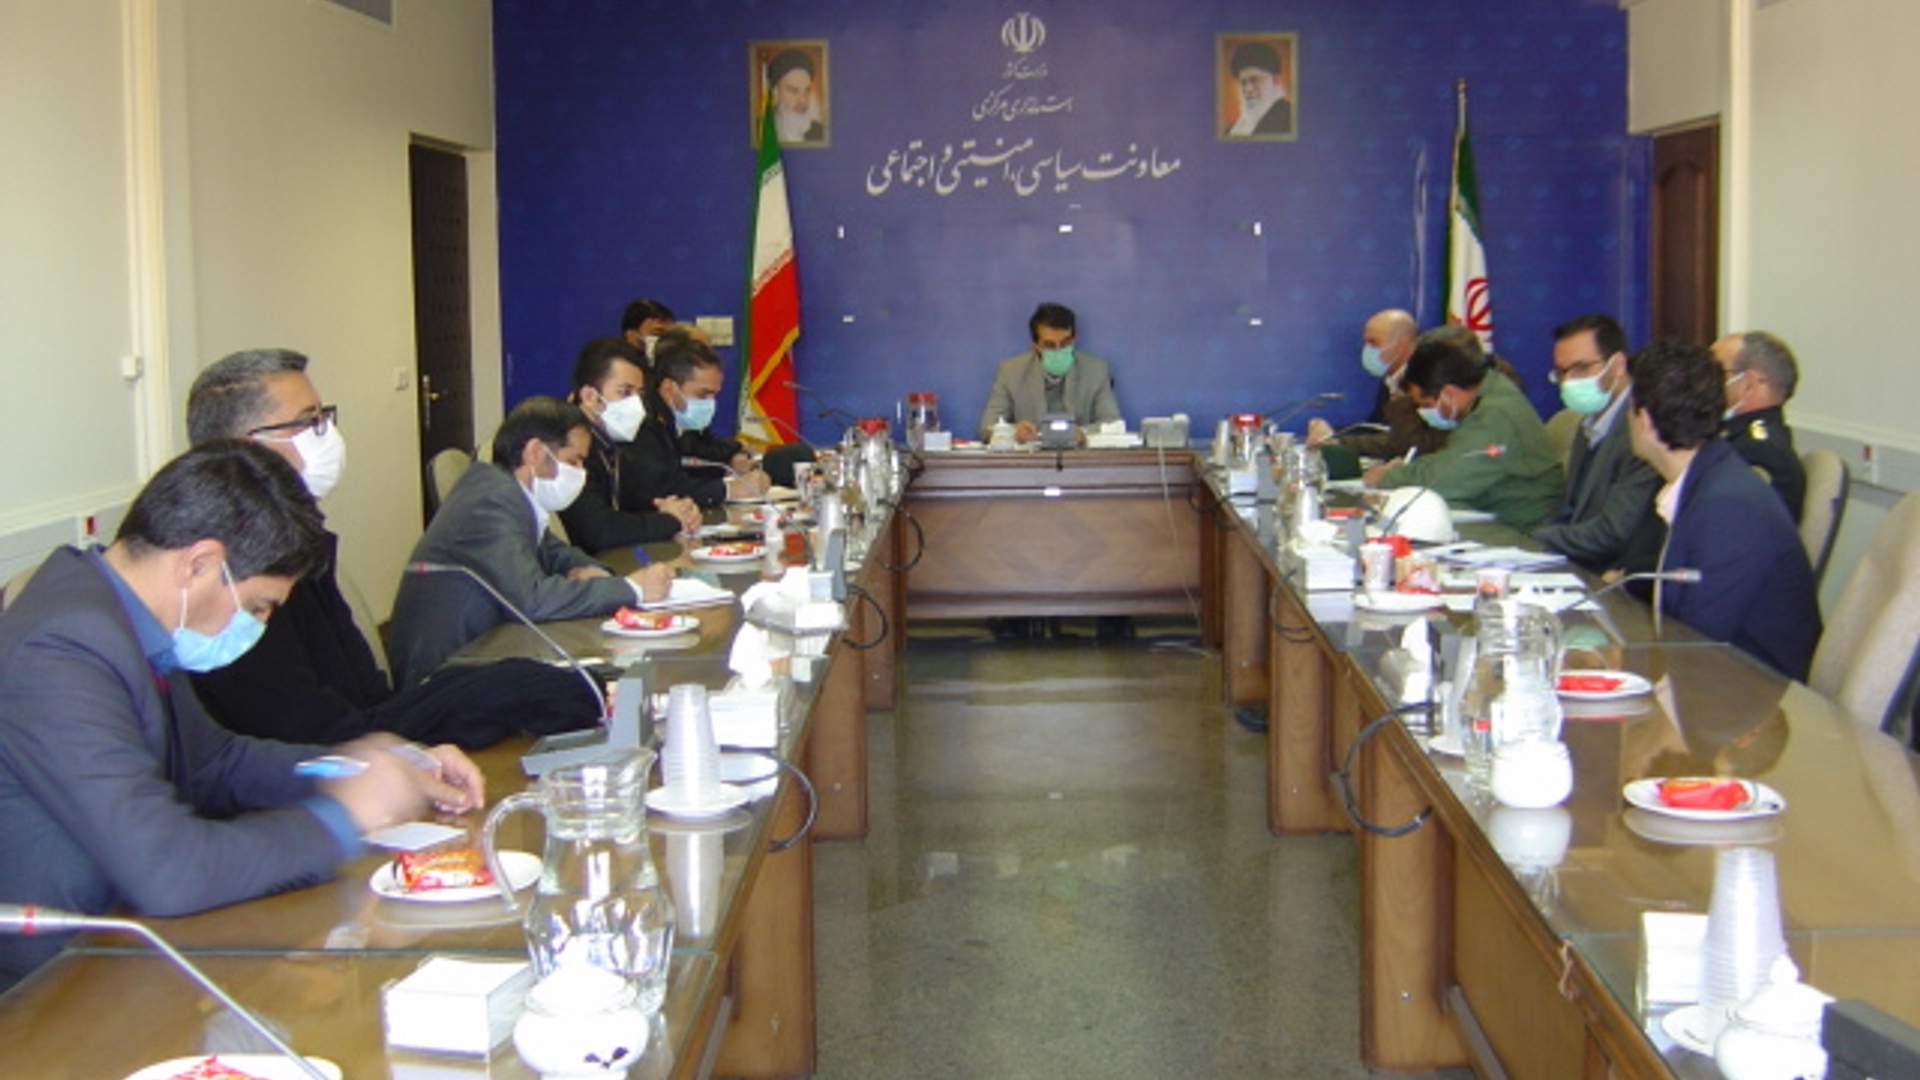 برگزاری جلسه کمیته فنی سامانه های هوشمند نظارتی استان